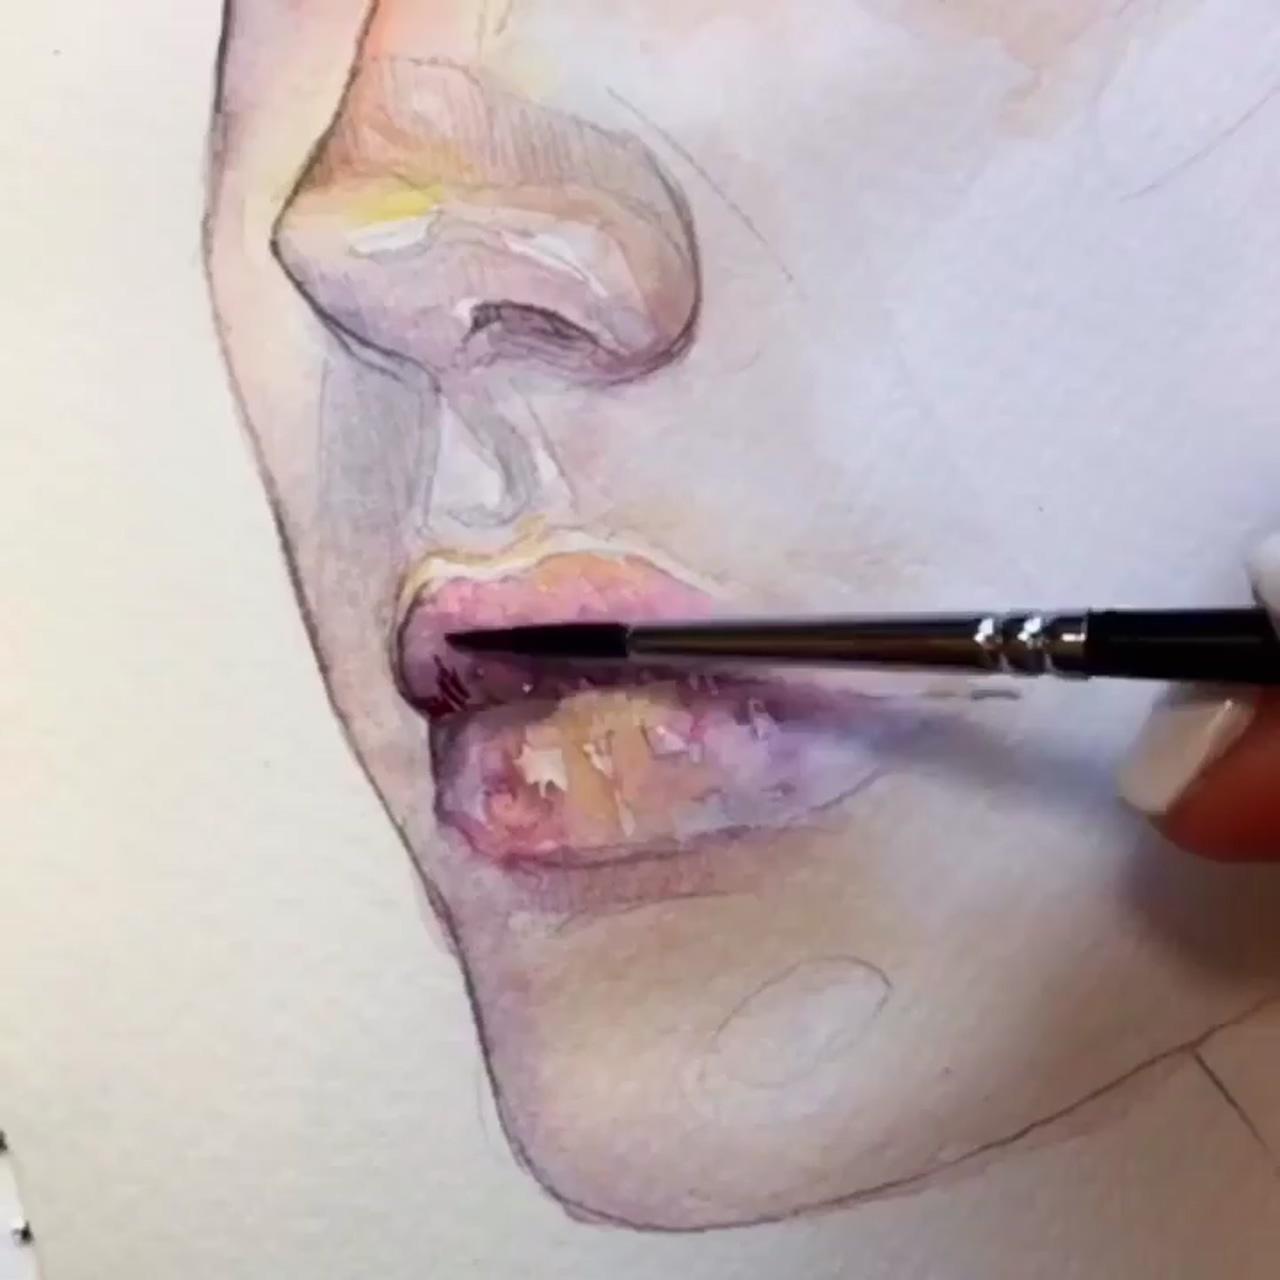 Lip drawing watercolor paint portrait art painting by artilina; diy watercolor painting